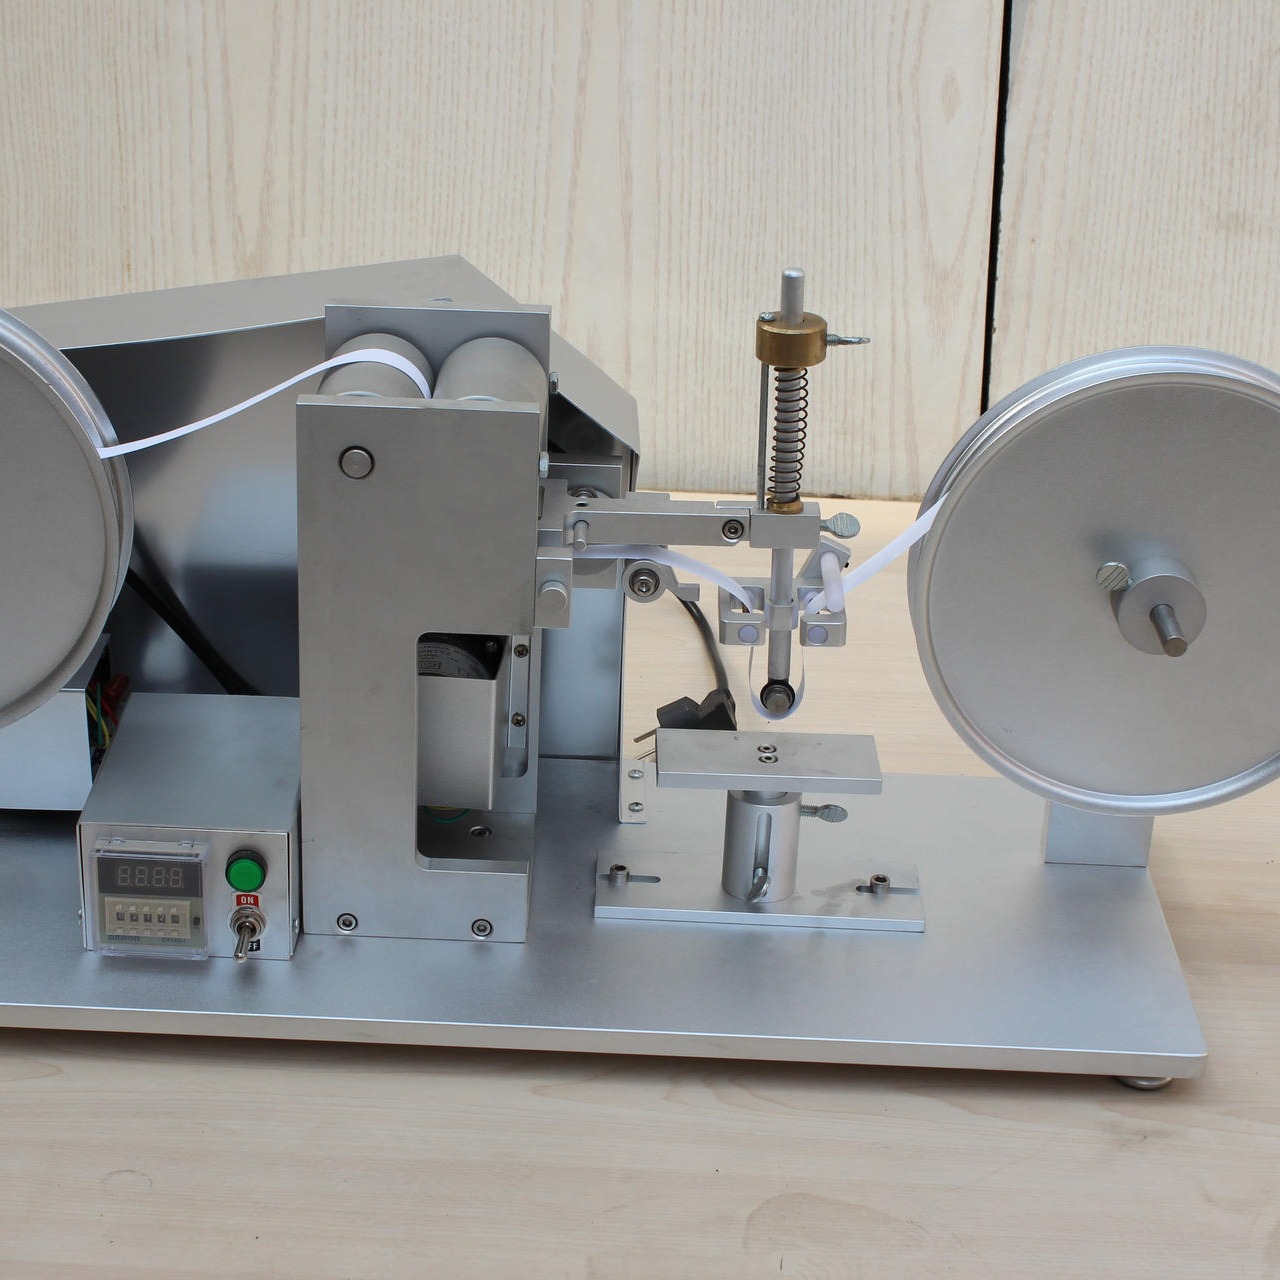 海莱斯HLS-9006 纸带耐磨试验机 用于各种表面涂装电镀烤漆丝印试品耐磨擦试验 符合ASTM F2357-04